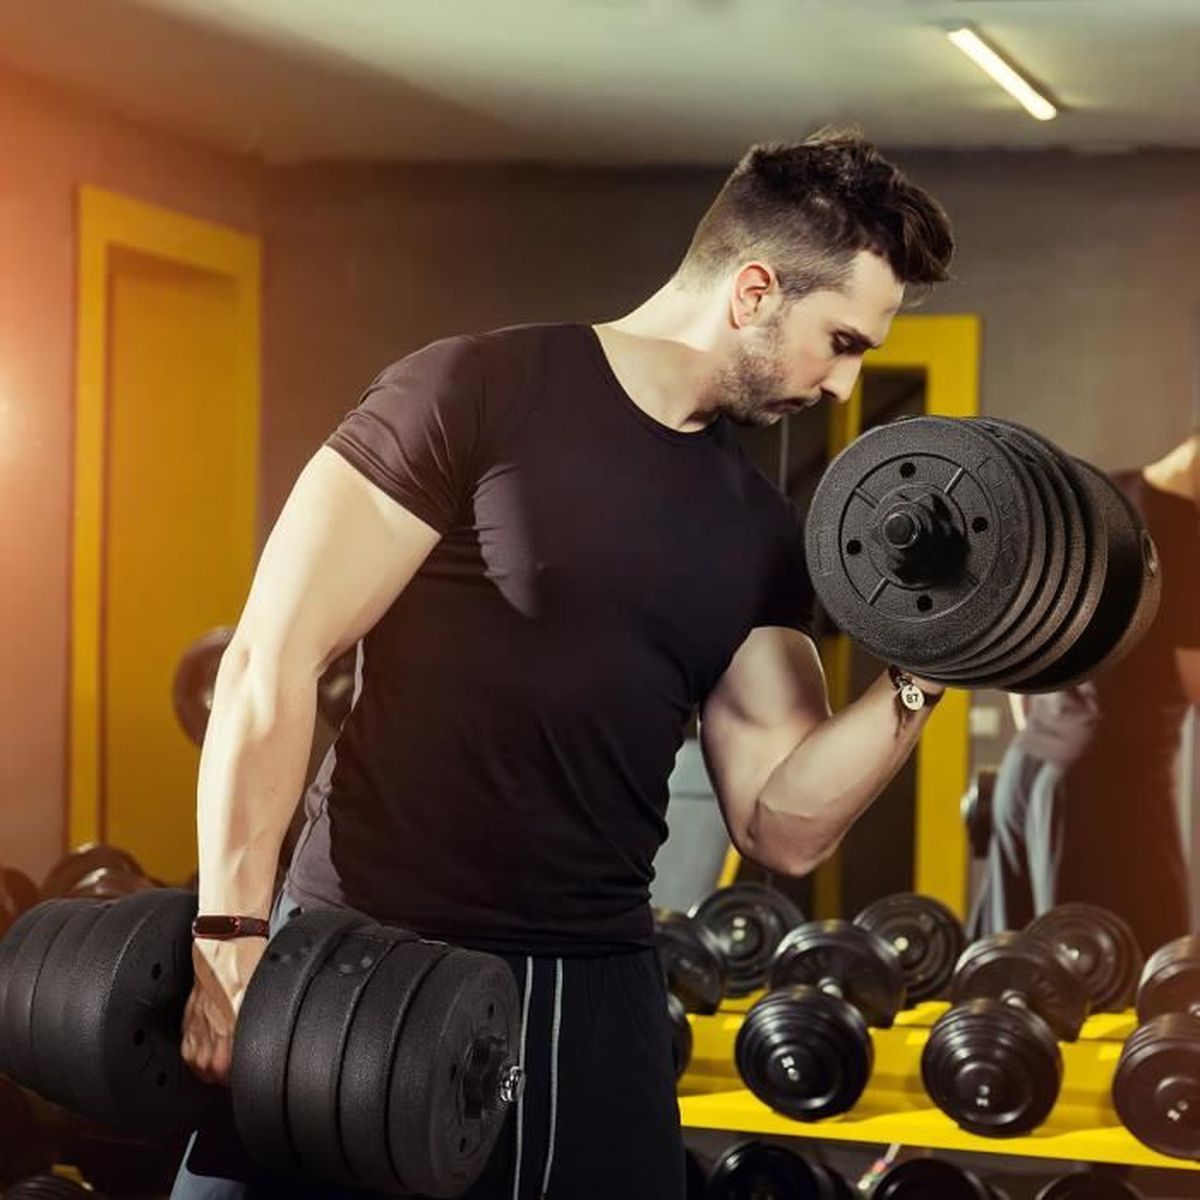 Vinyle 15kg háltere fitness exercise maison gym biceps entraînement perte poids 